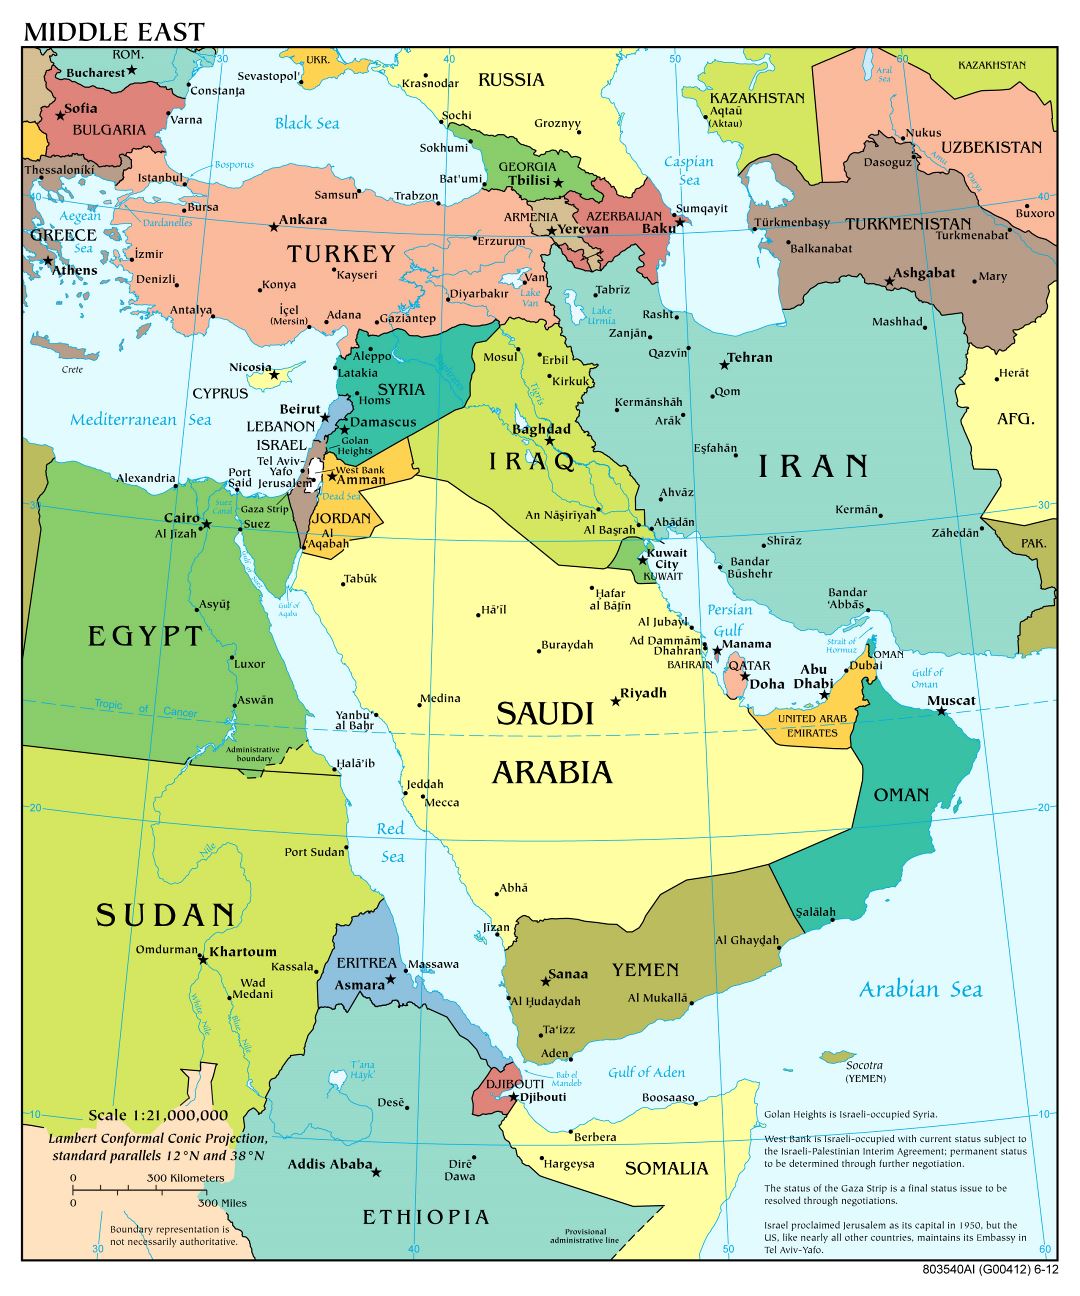 Gran escala detallada mapa político del Medio Oriente con las principales ciudades y capitales - 2012